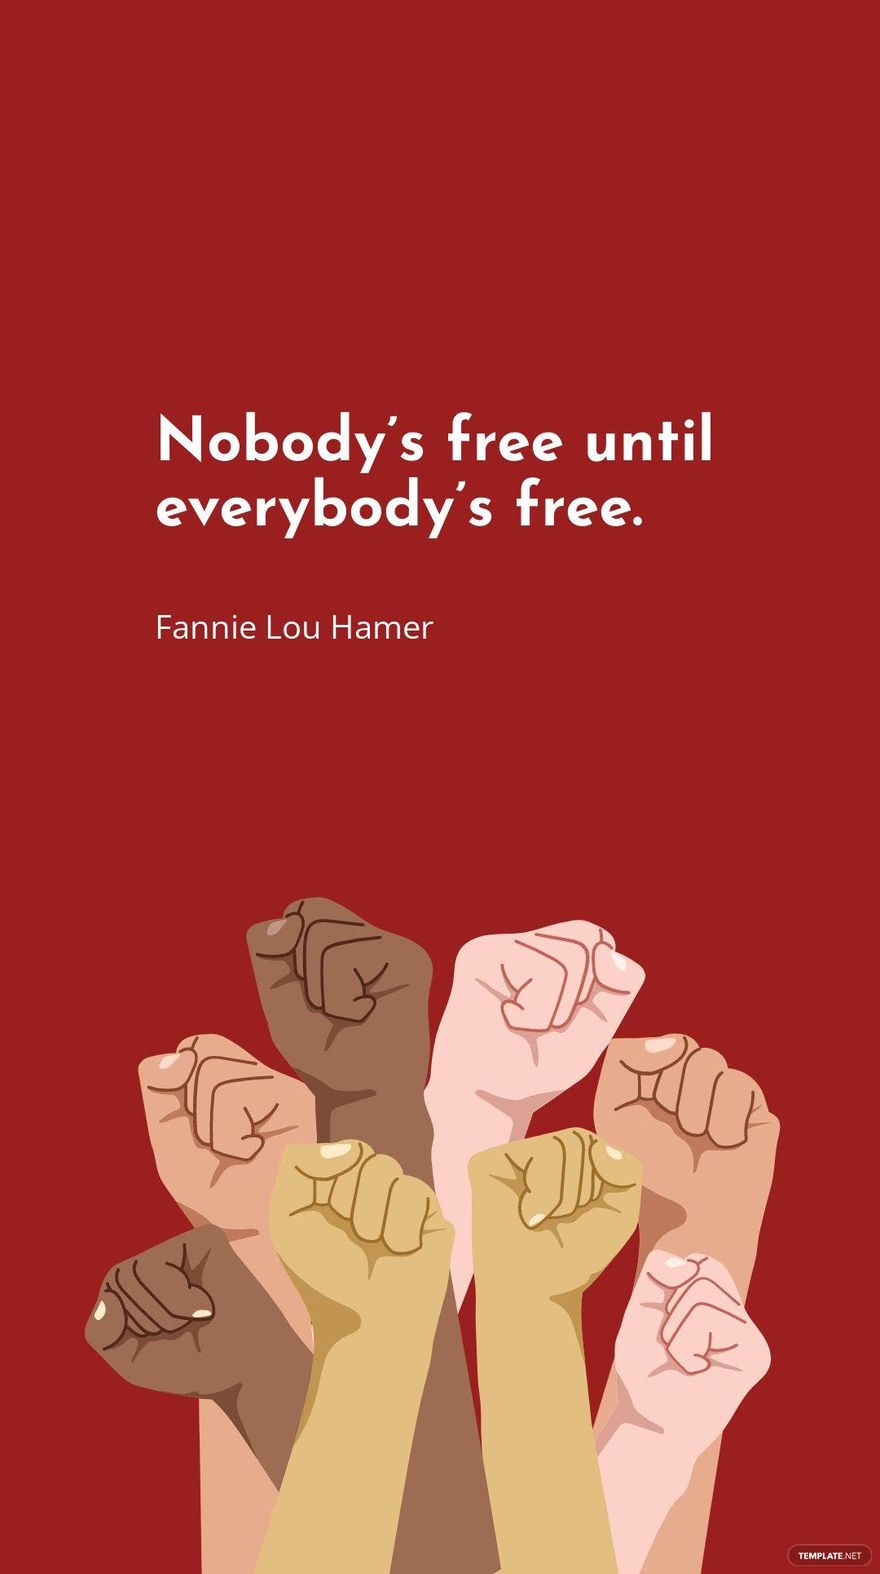 Free Fannie Lou Hamer - Nobody’s until everybody’s in JPG